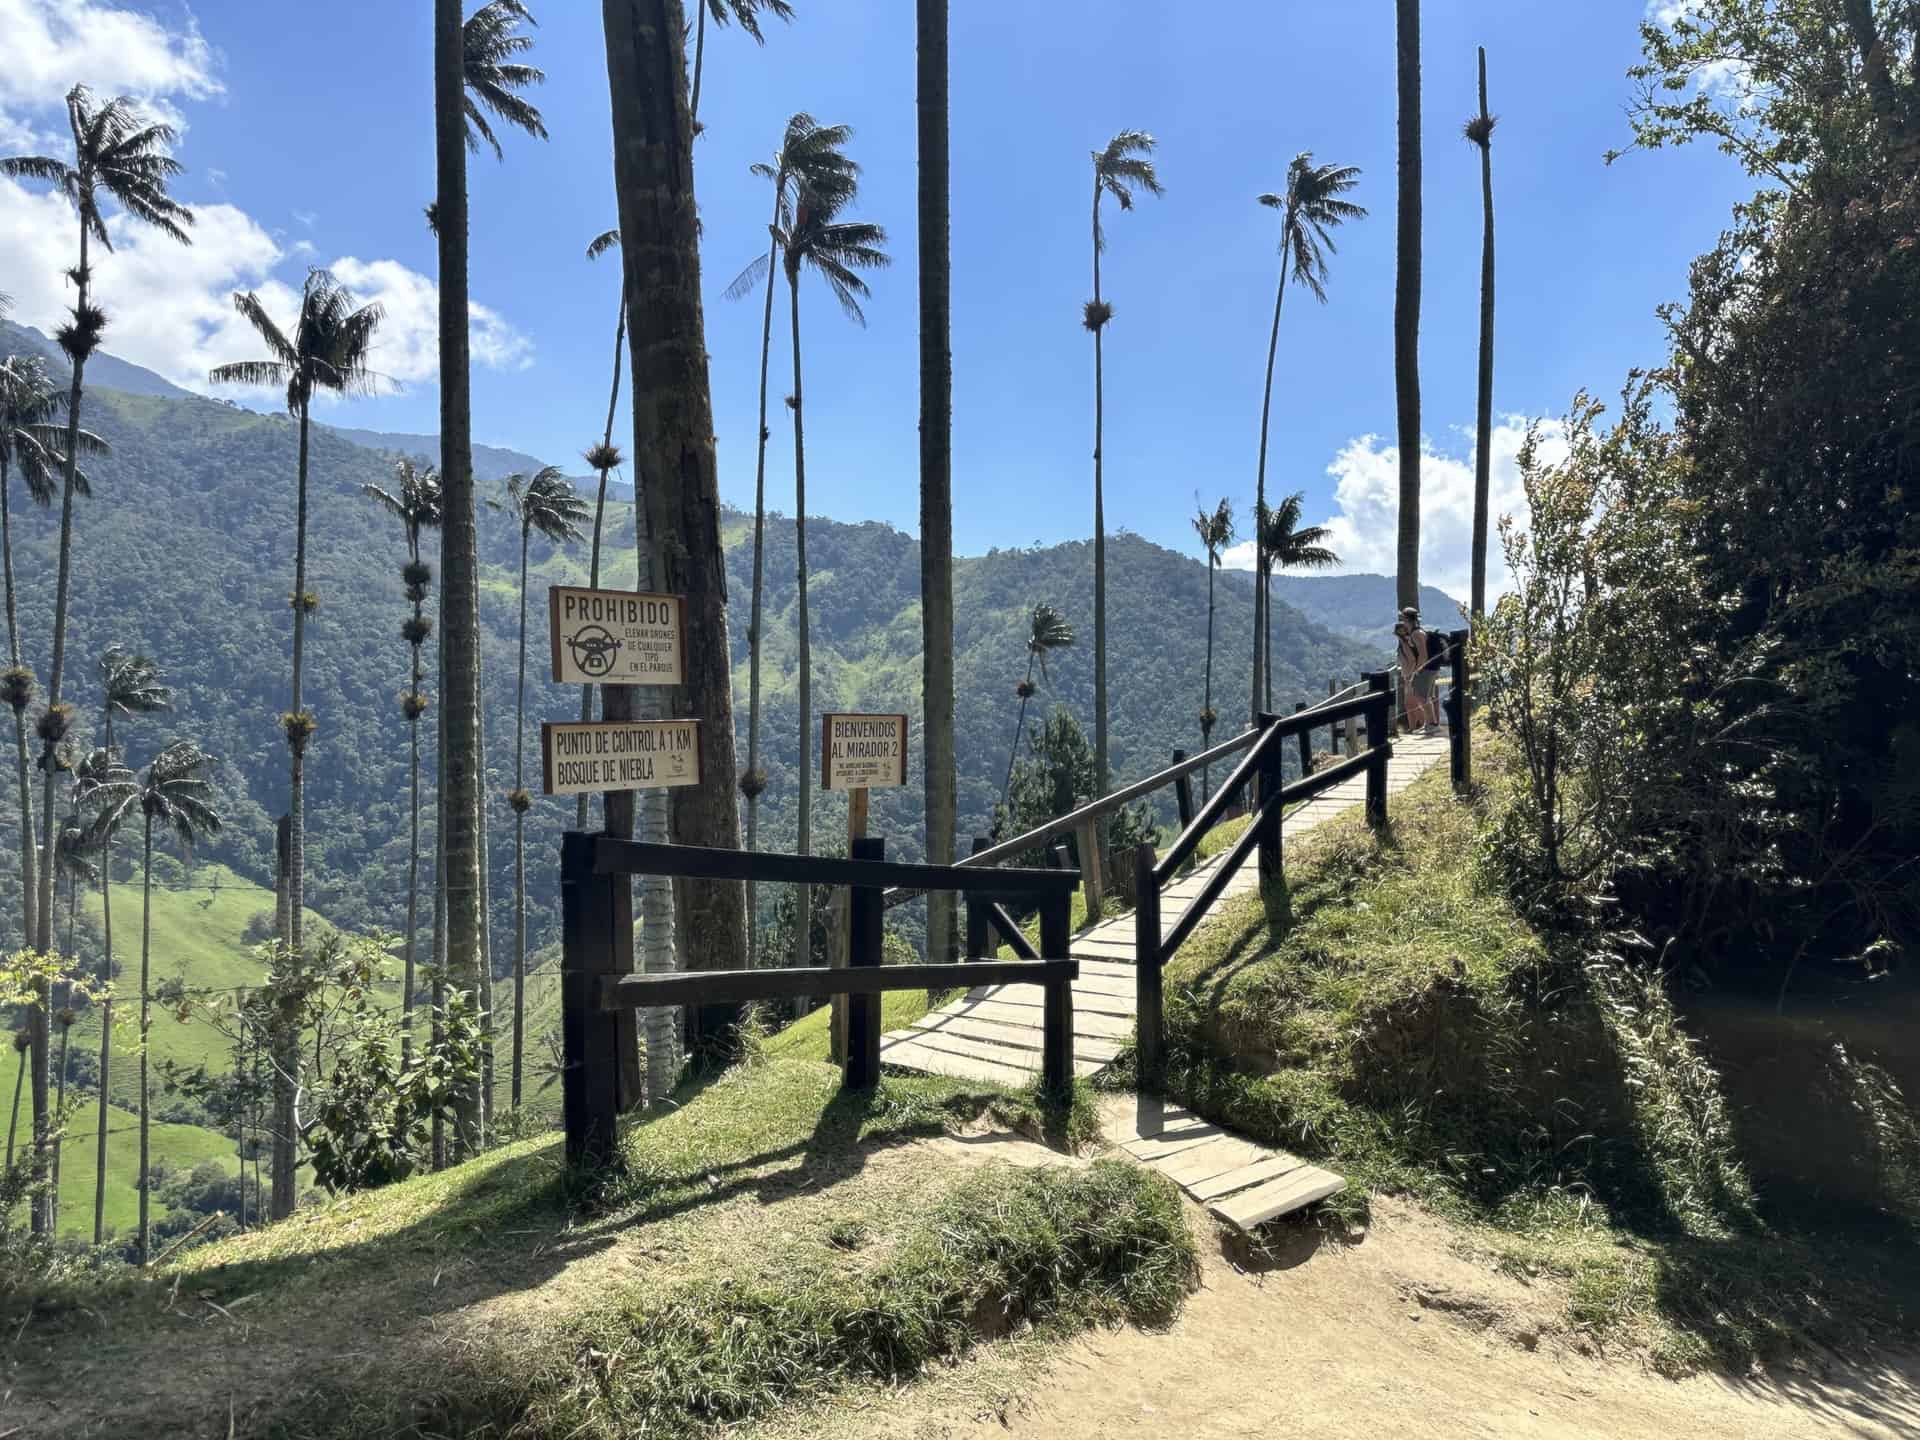 Entrance to Mirador #2 at Cocora Valley in Quindío, Colombia